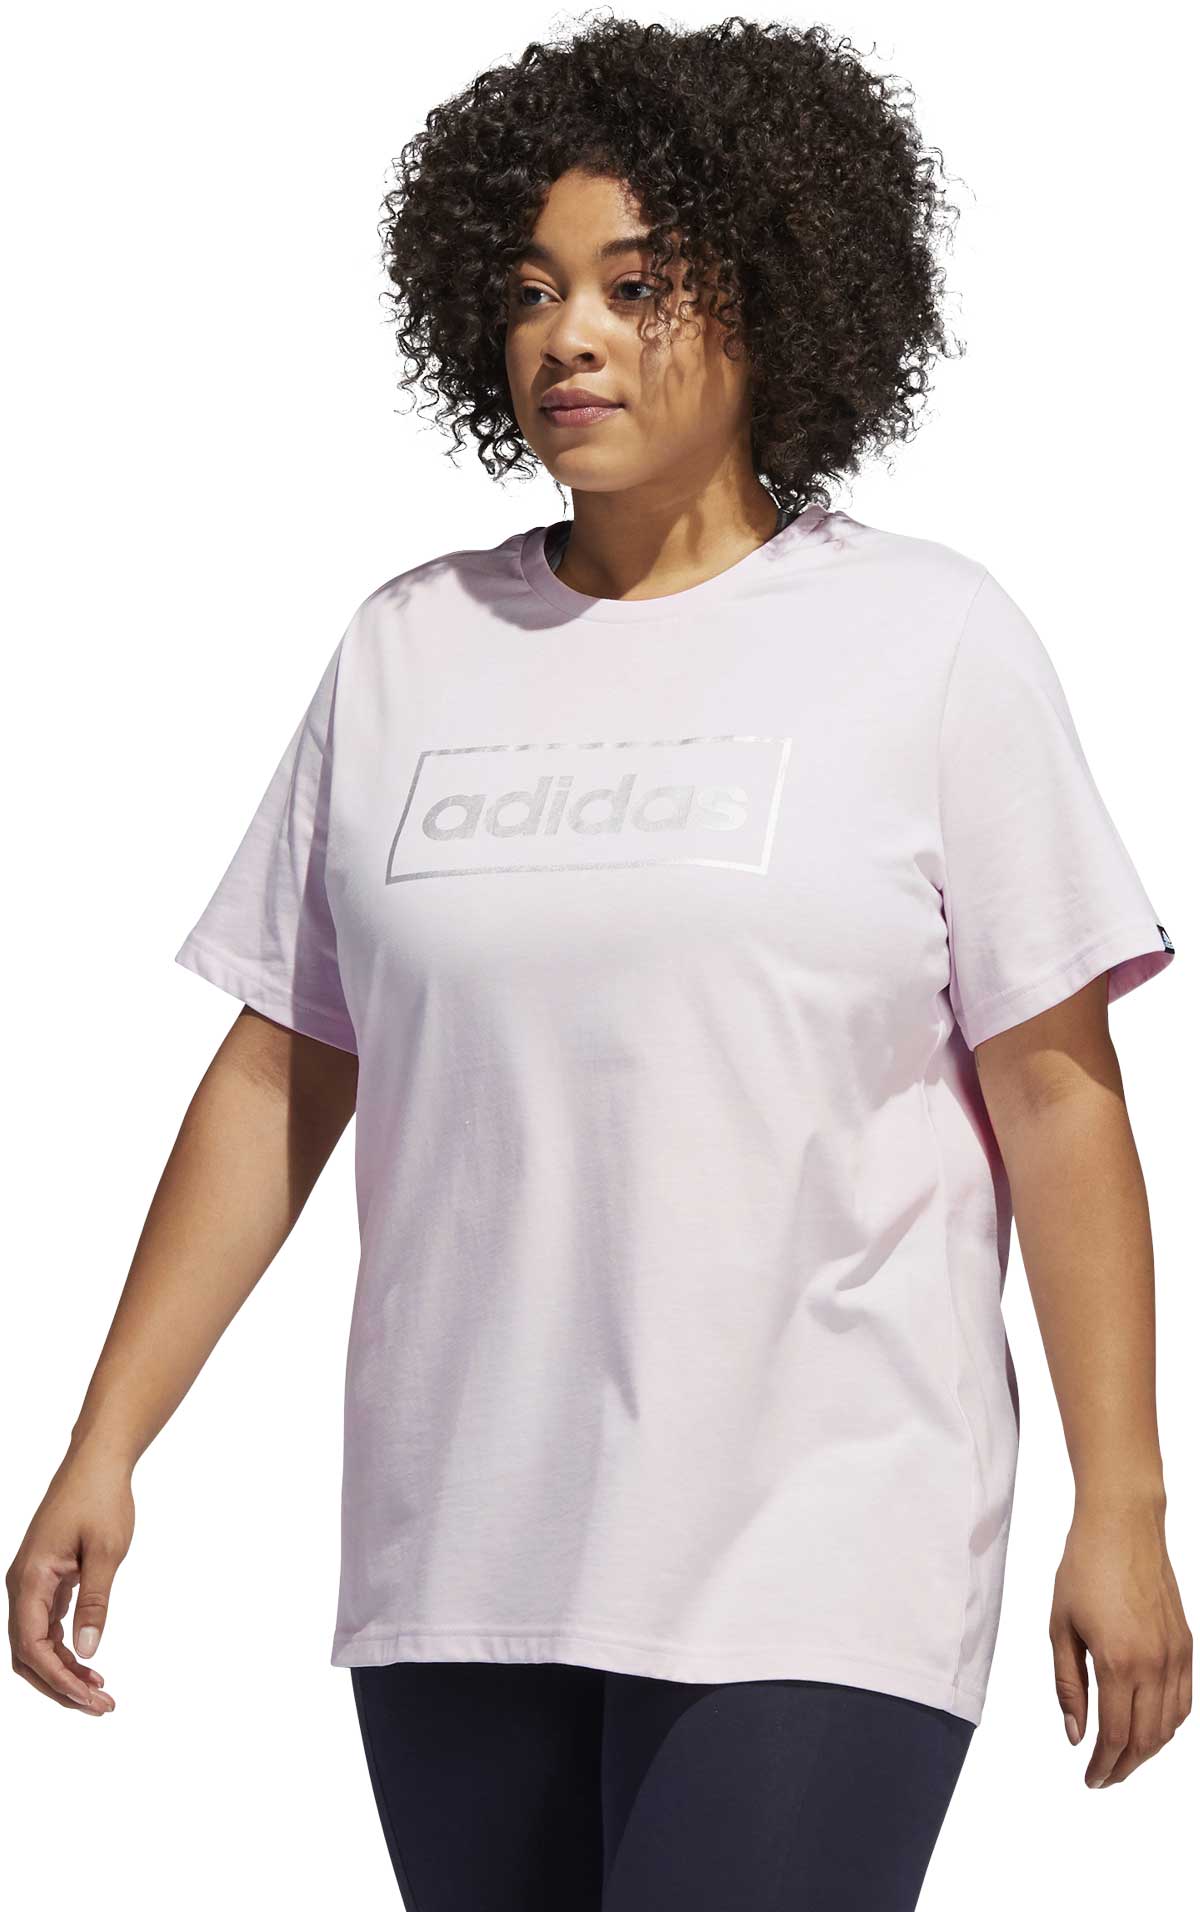 Plus Size Sportshirt für Damen